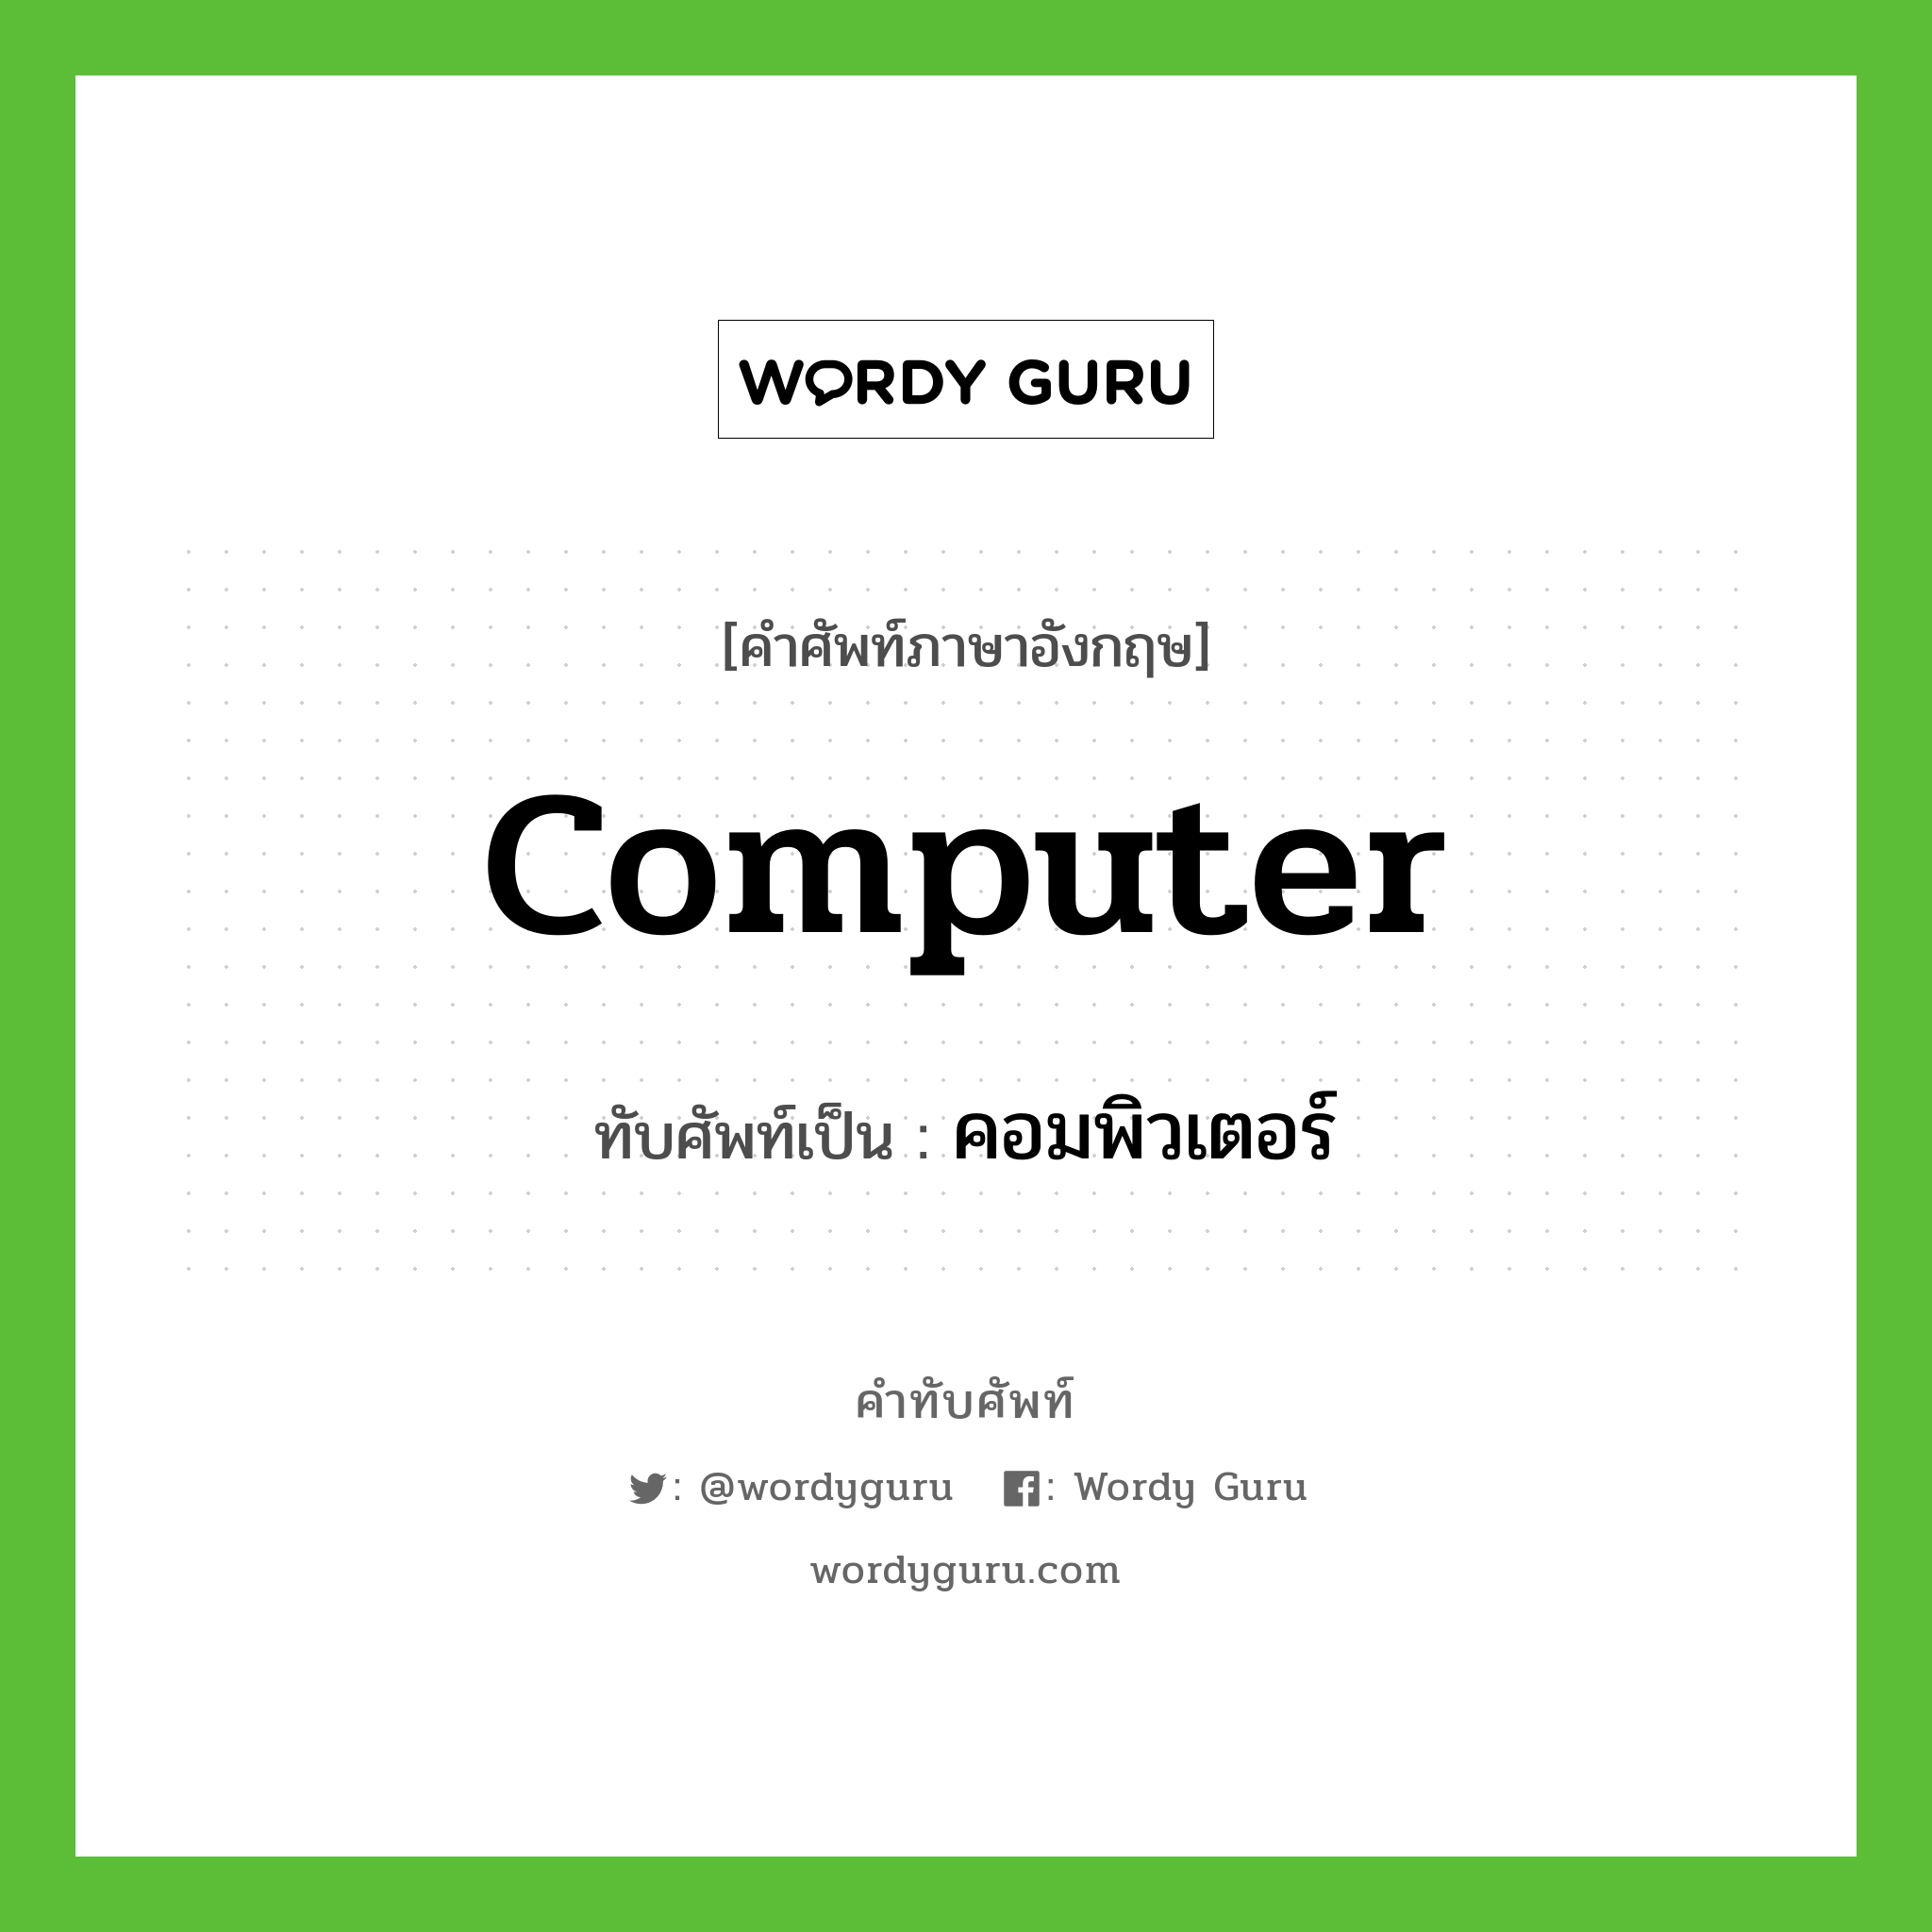 computer เขียนเป็นคำไทยว่าอะไร?, คำศัพท์ภาษาอังกฤษ computer ทับศัพท์เป็น คอมพิวเตอร์